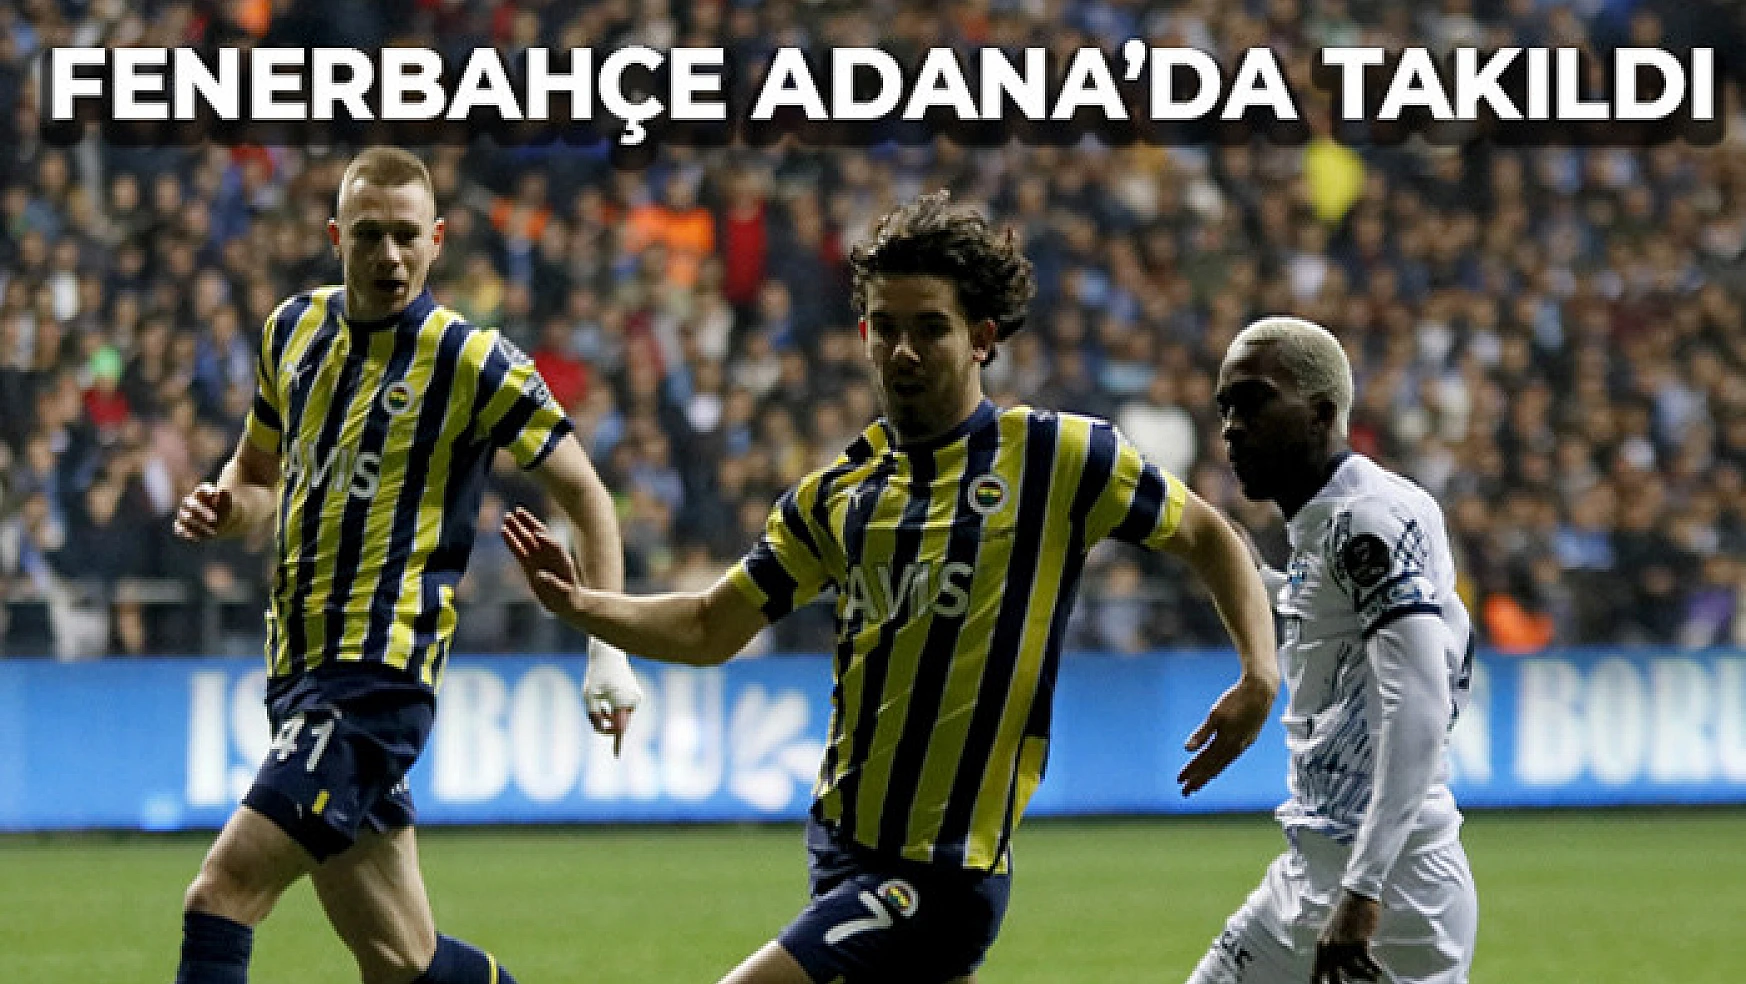 Fenerbahçe Adana'da takıldı